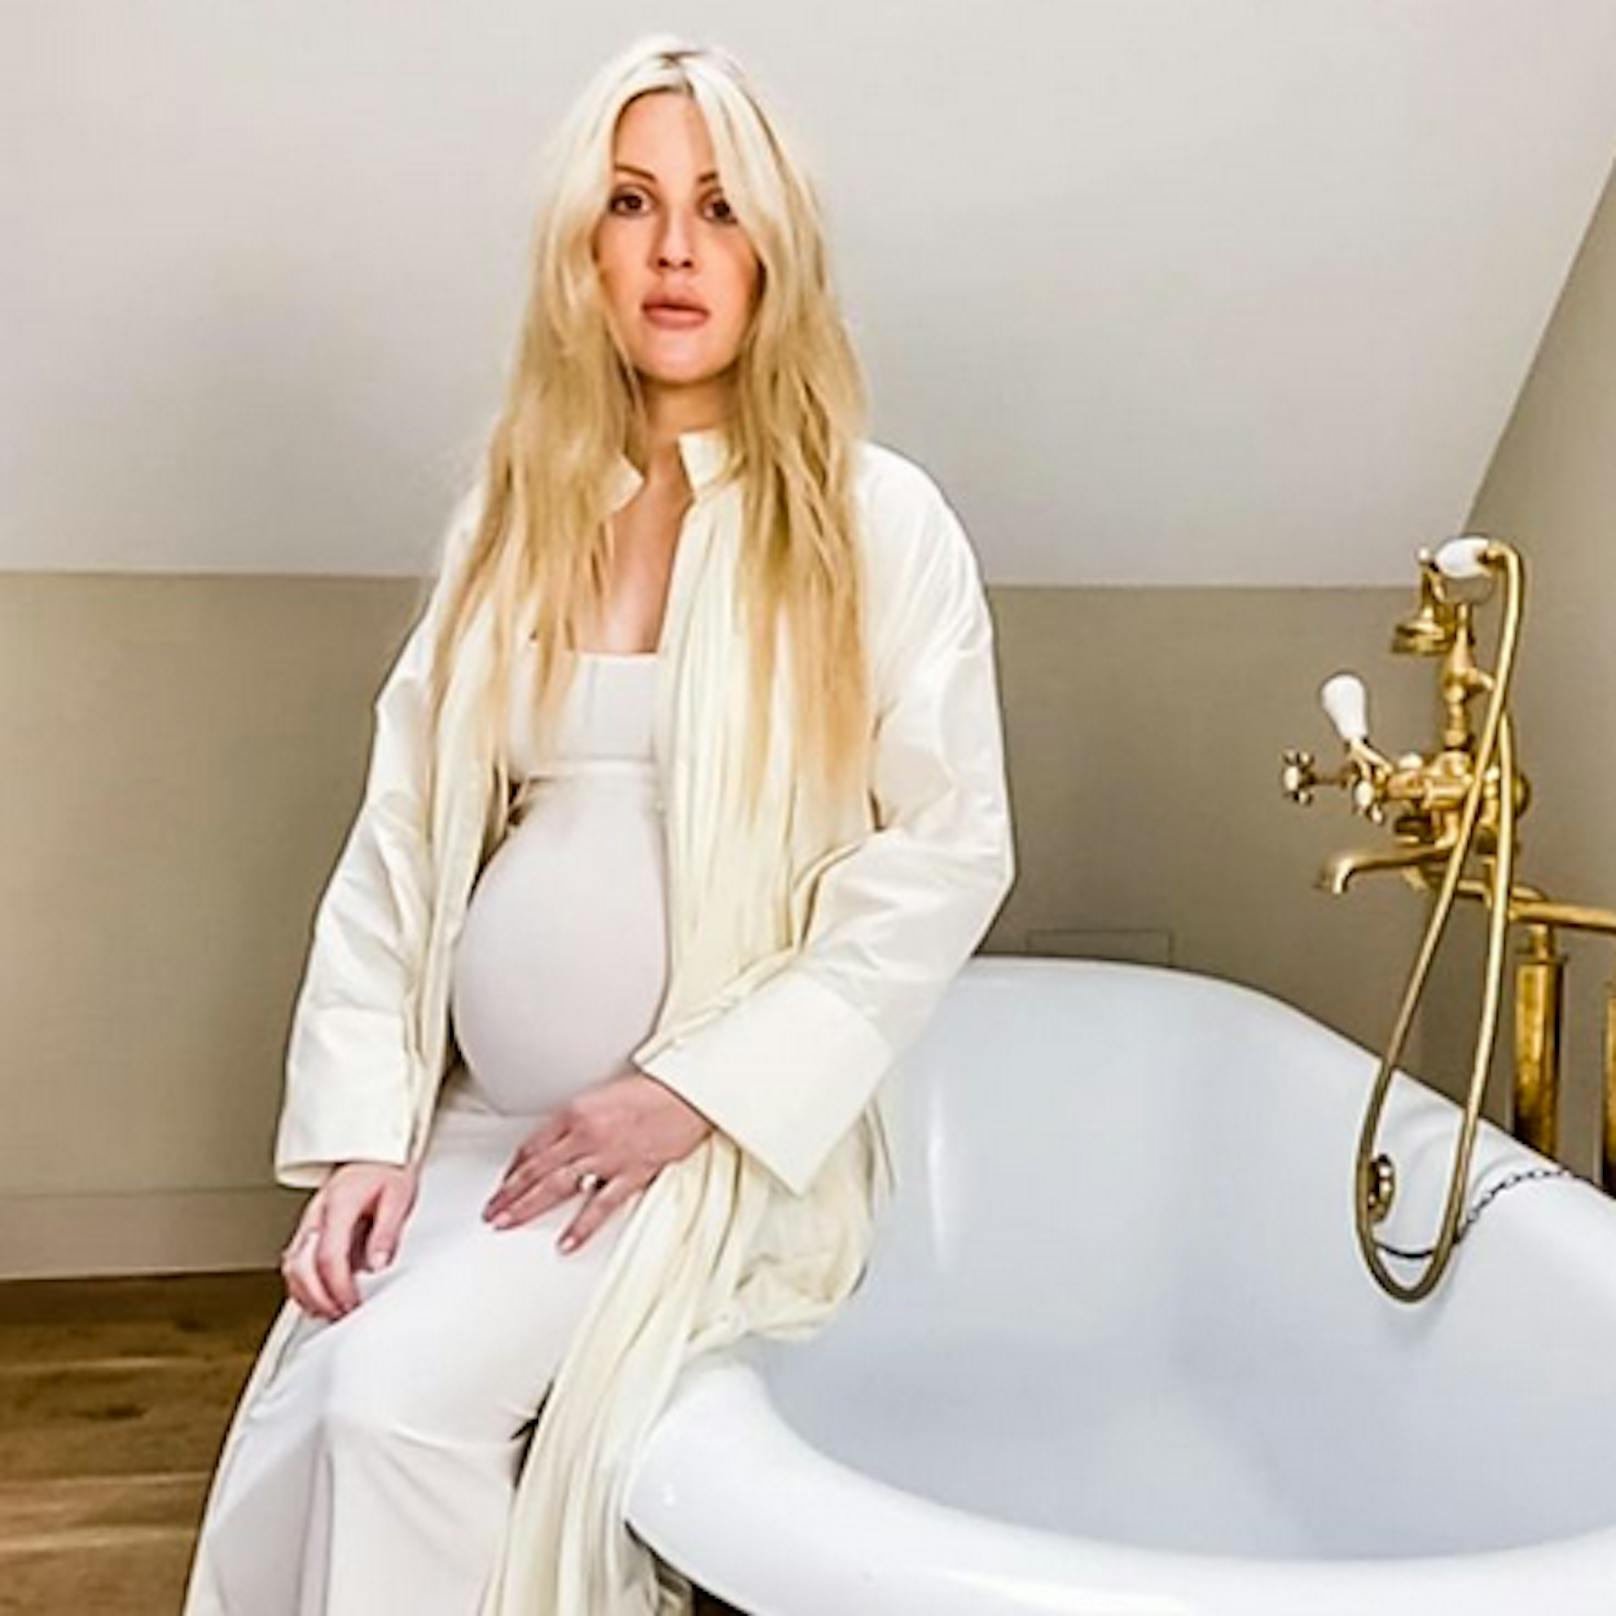 Diese <a href="https://www.heute.at/s/ellie-goulding-ist-schwanger-war-nicht-geplant-100129592">Baby-Überraschung</a> ist der britischen Sängerin Ellie Goulding wirklich gelungen: Acht Monate lang behielt die Musikerin ihre Schwangerschaft für sich und hat erst jetzt der "Vogue" ihr süßes Geheimnis verraten.<br>